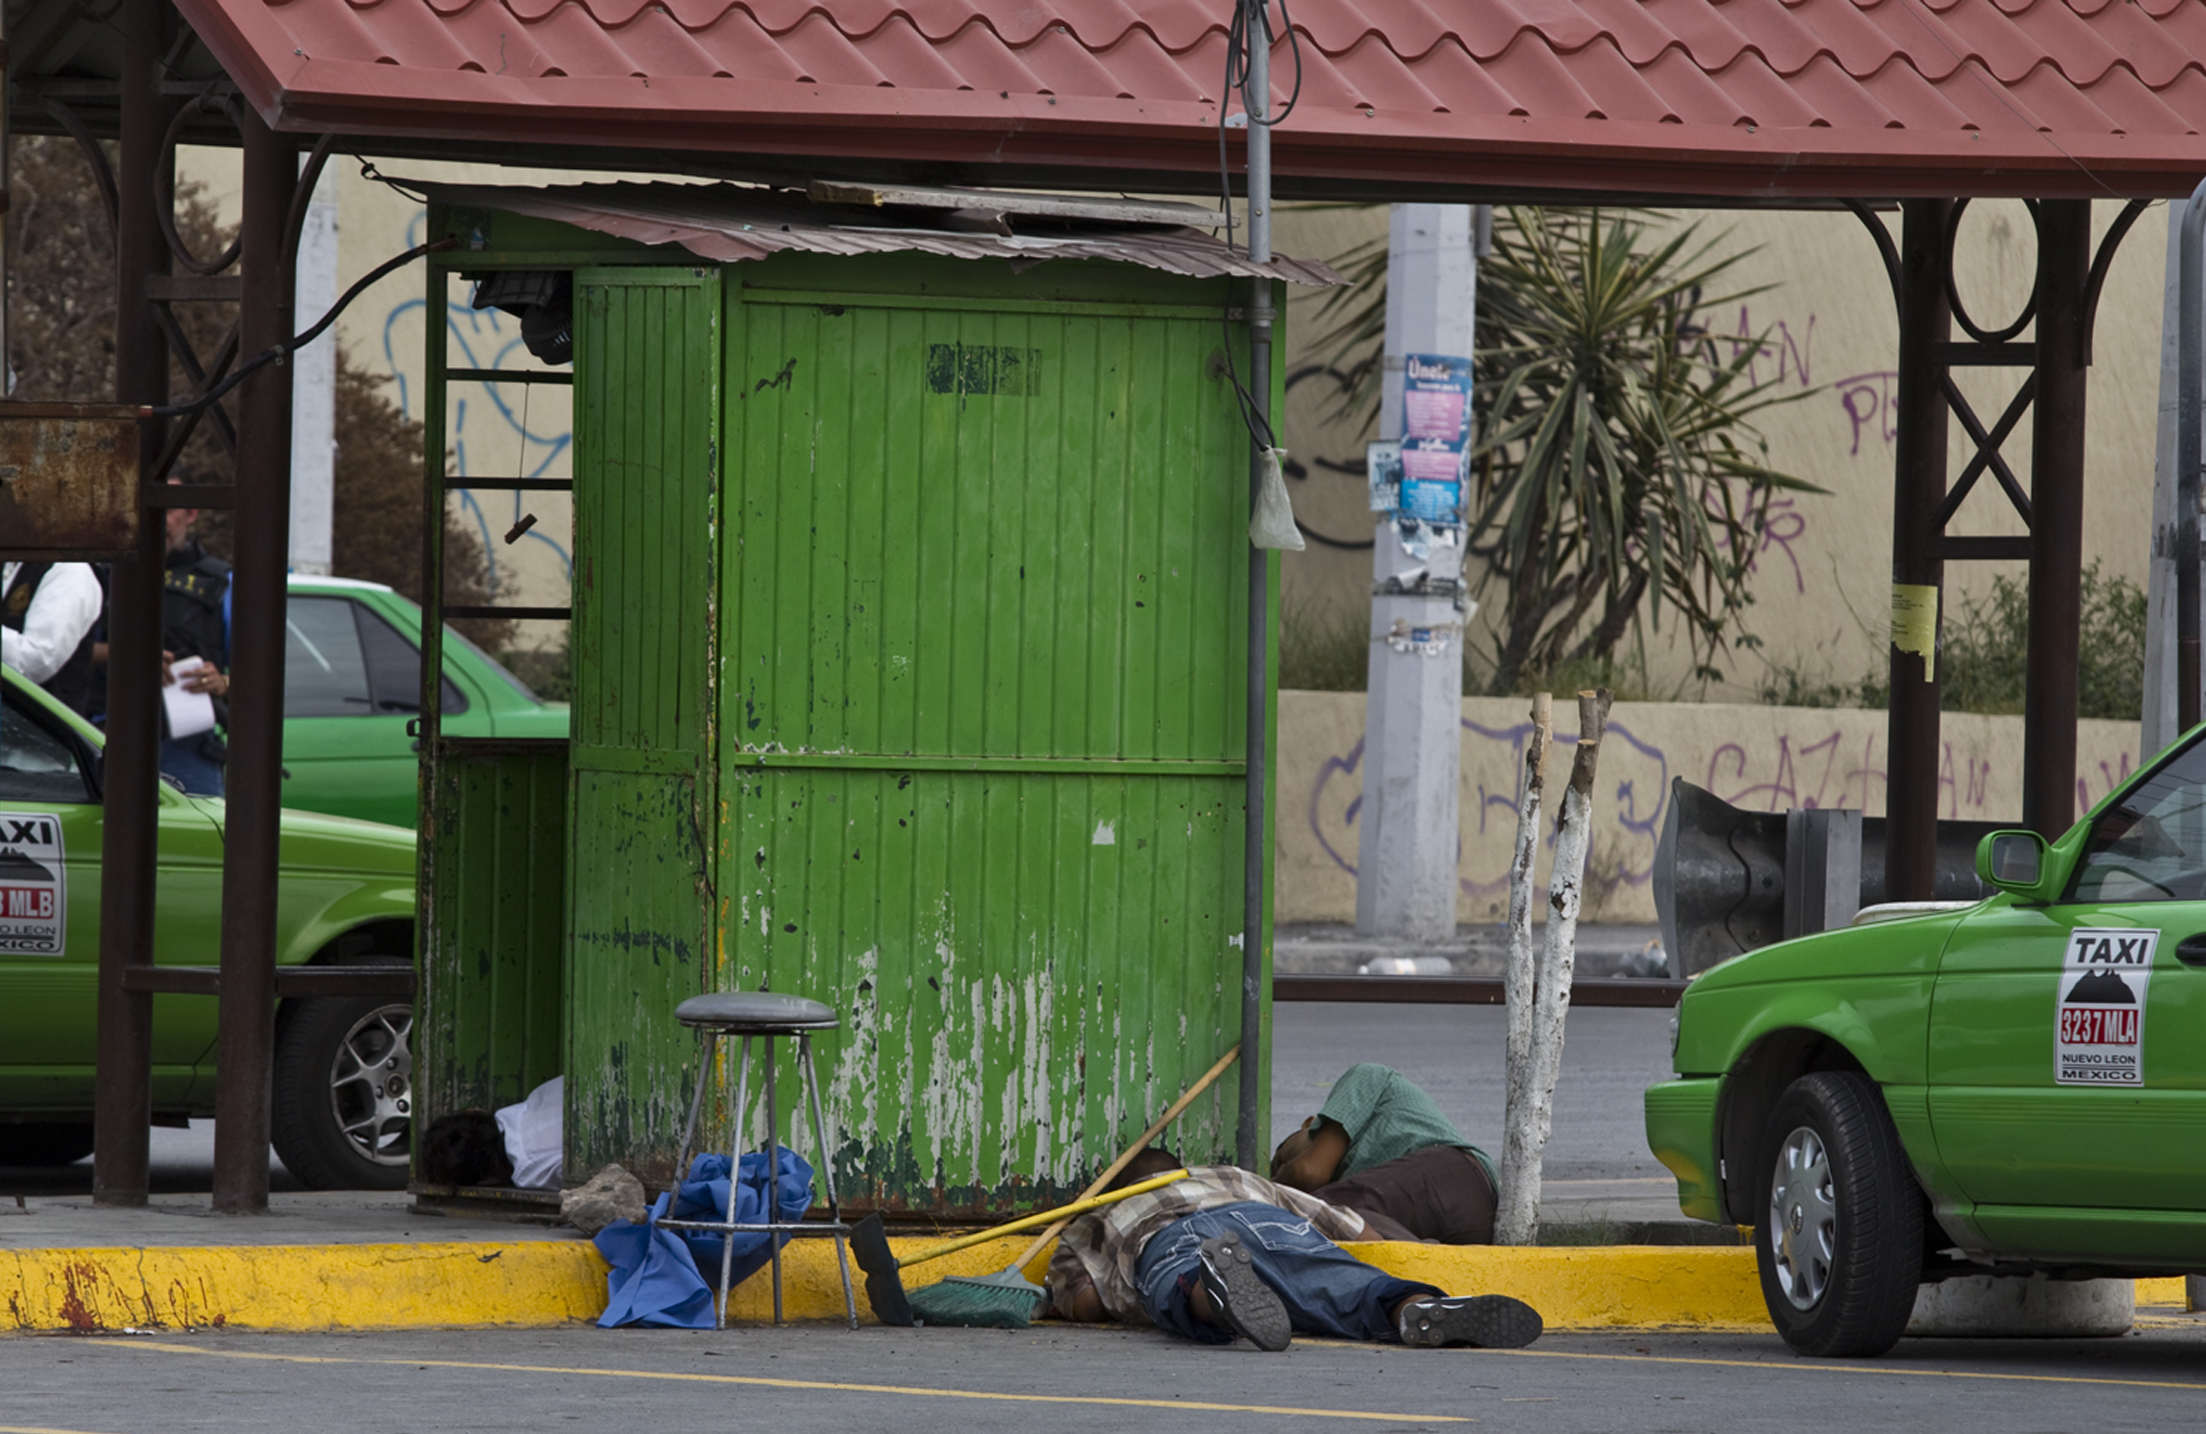 Oroligheterna i Monterrey har ökat med åren. Den här bilden är tagen 31 maj 2011 då tre män dödades vid en taxistation. Inom loppet av tre veckor mördades 11 personer.